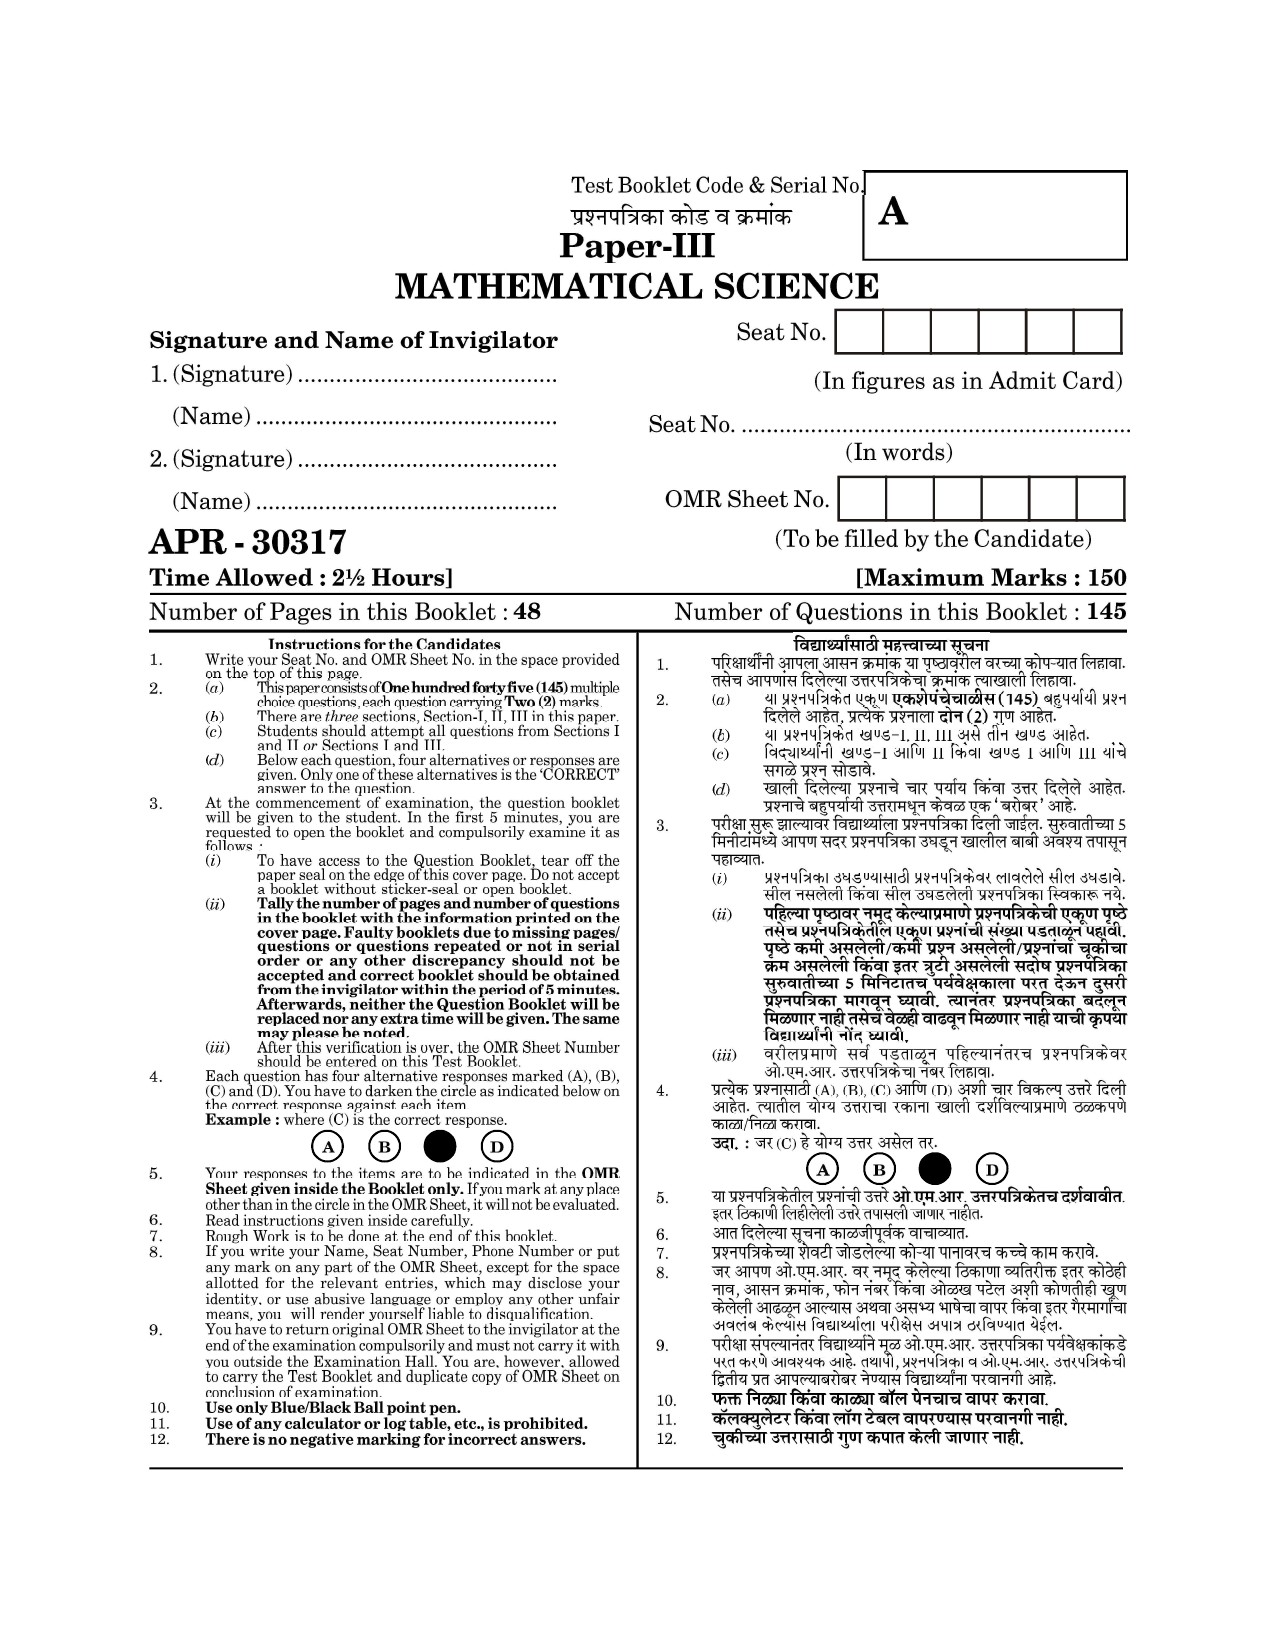 Maharashtra SET Mathematical Sciences Question Paper III April 2017 1